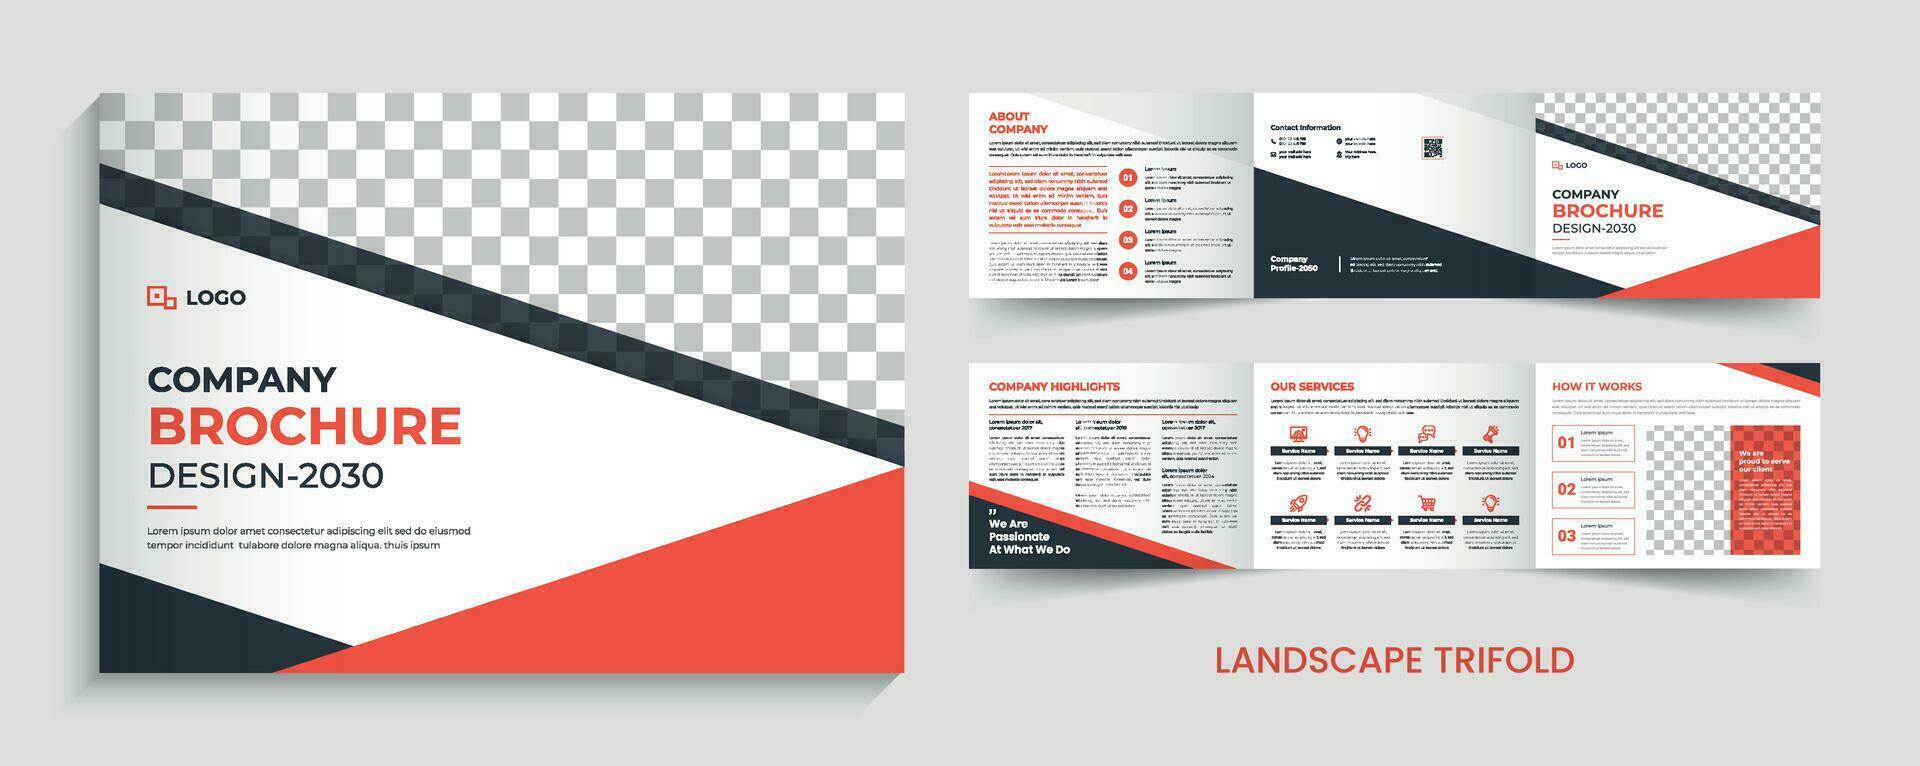 företags- företag 6 sida landskap trifold mall design vektor